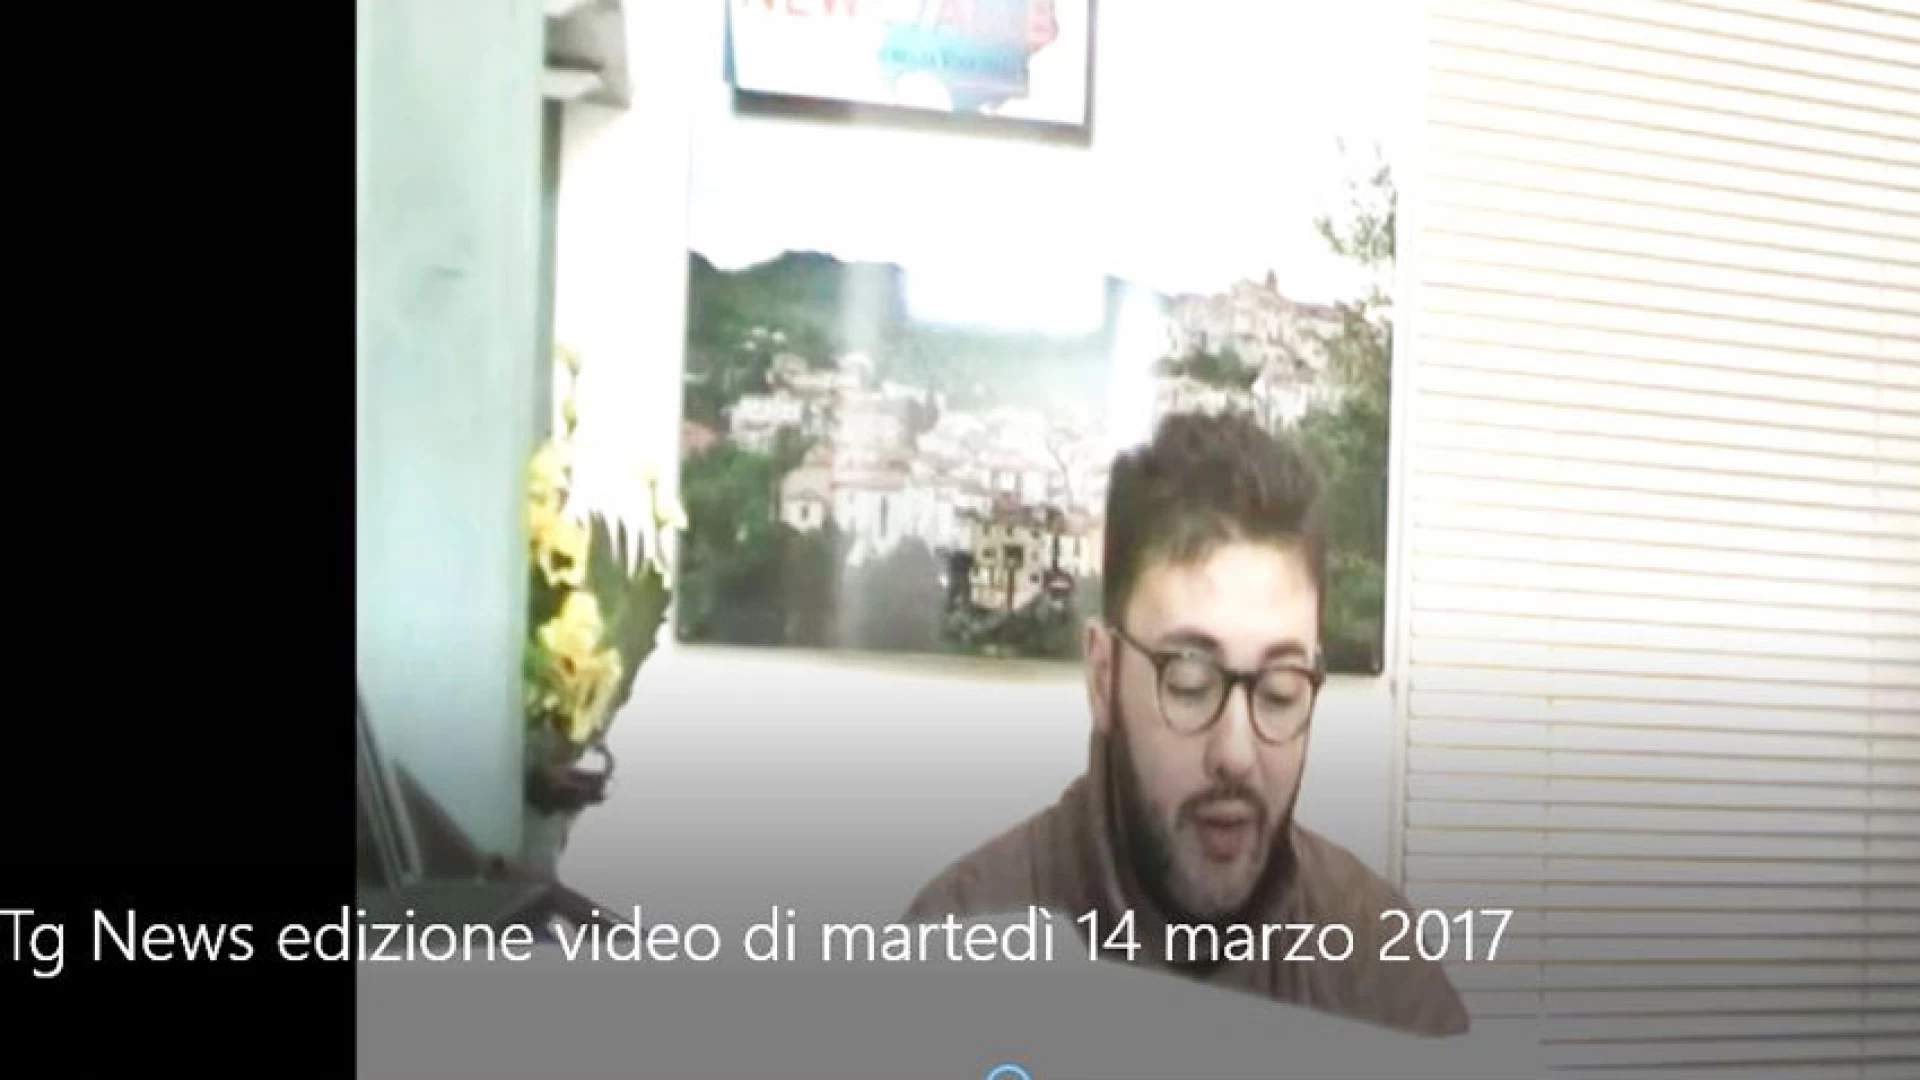 Tg News, edizione video di martedì 14 marzo 2017.